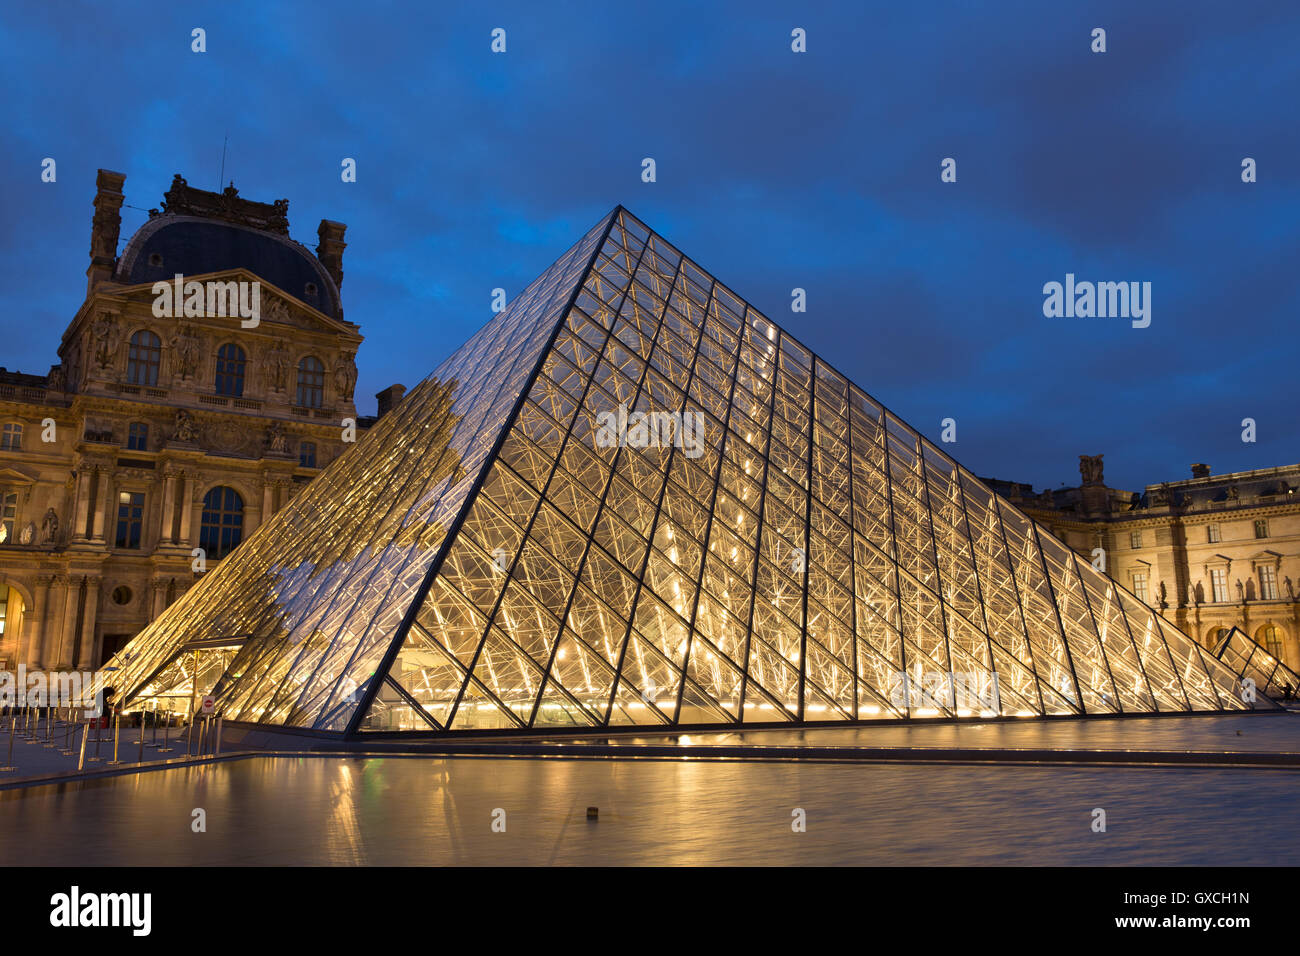 La principale (Pyramide) entrée du Louvre, Paris, France. Banque D'Images